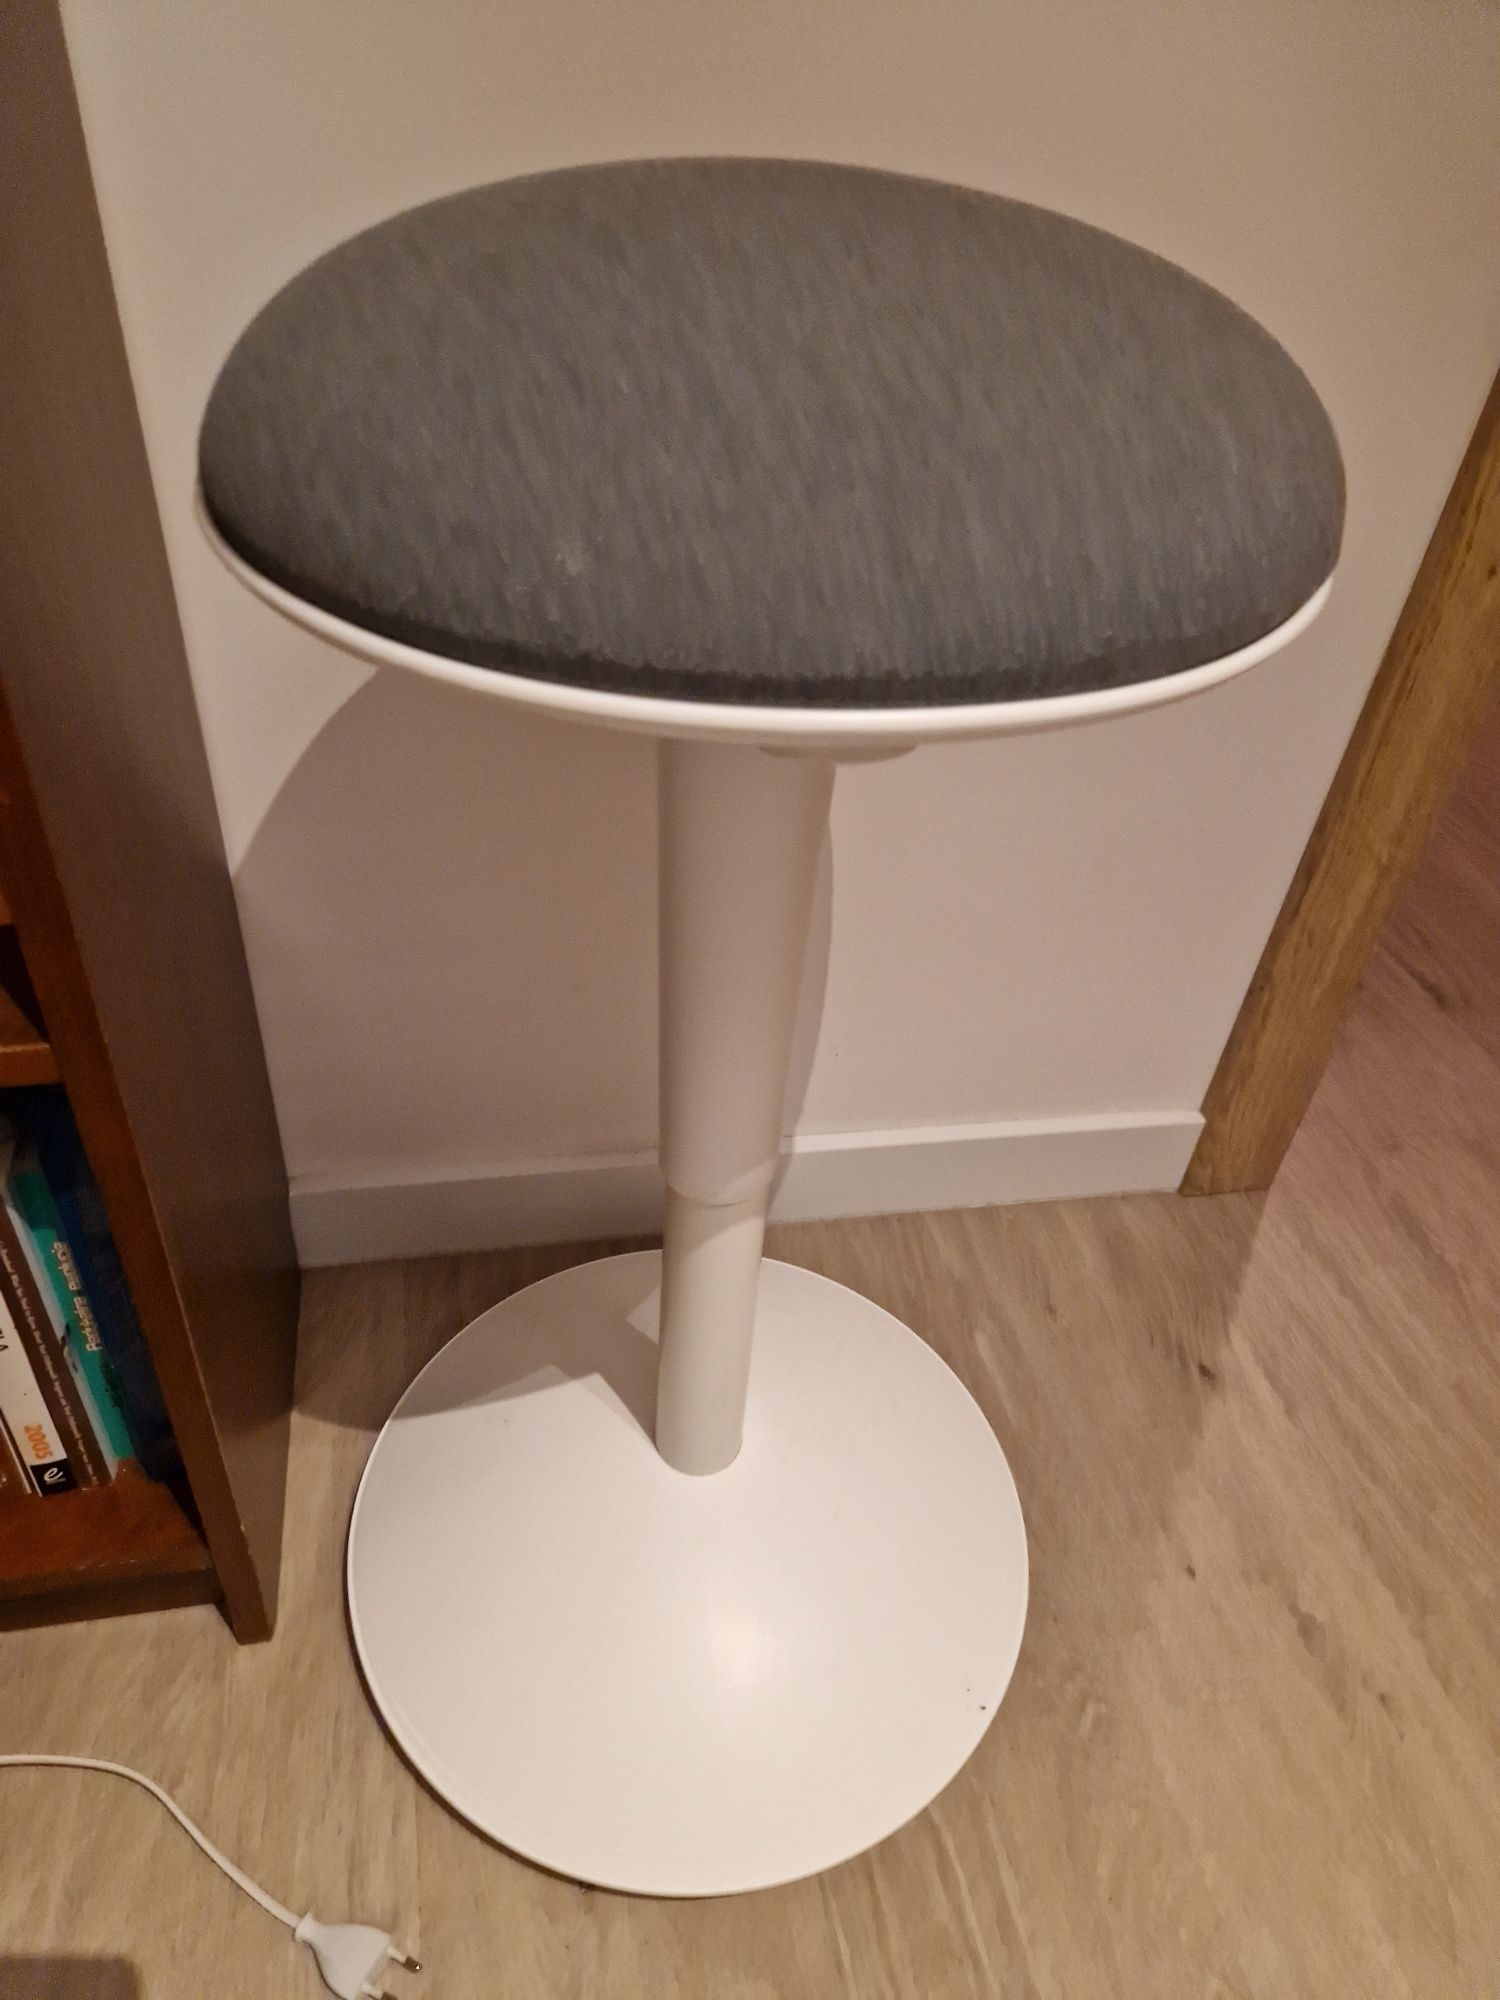 IKEA Nilserik taboret ortopedyczny krzesło